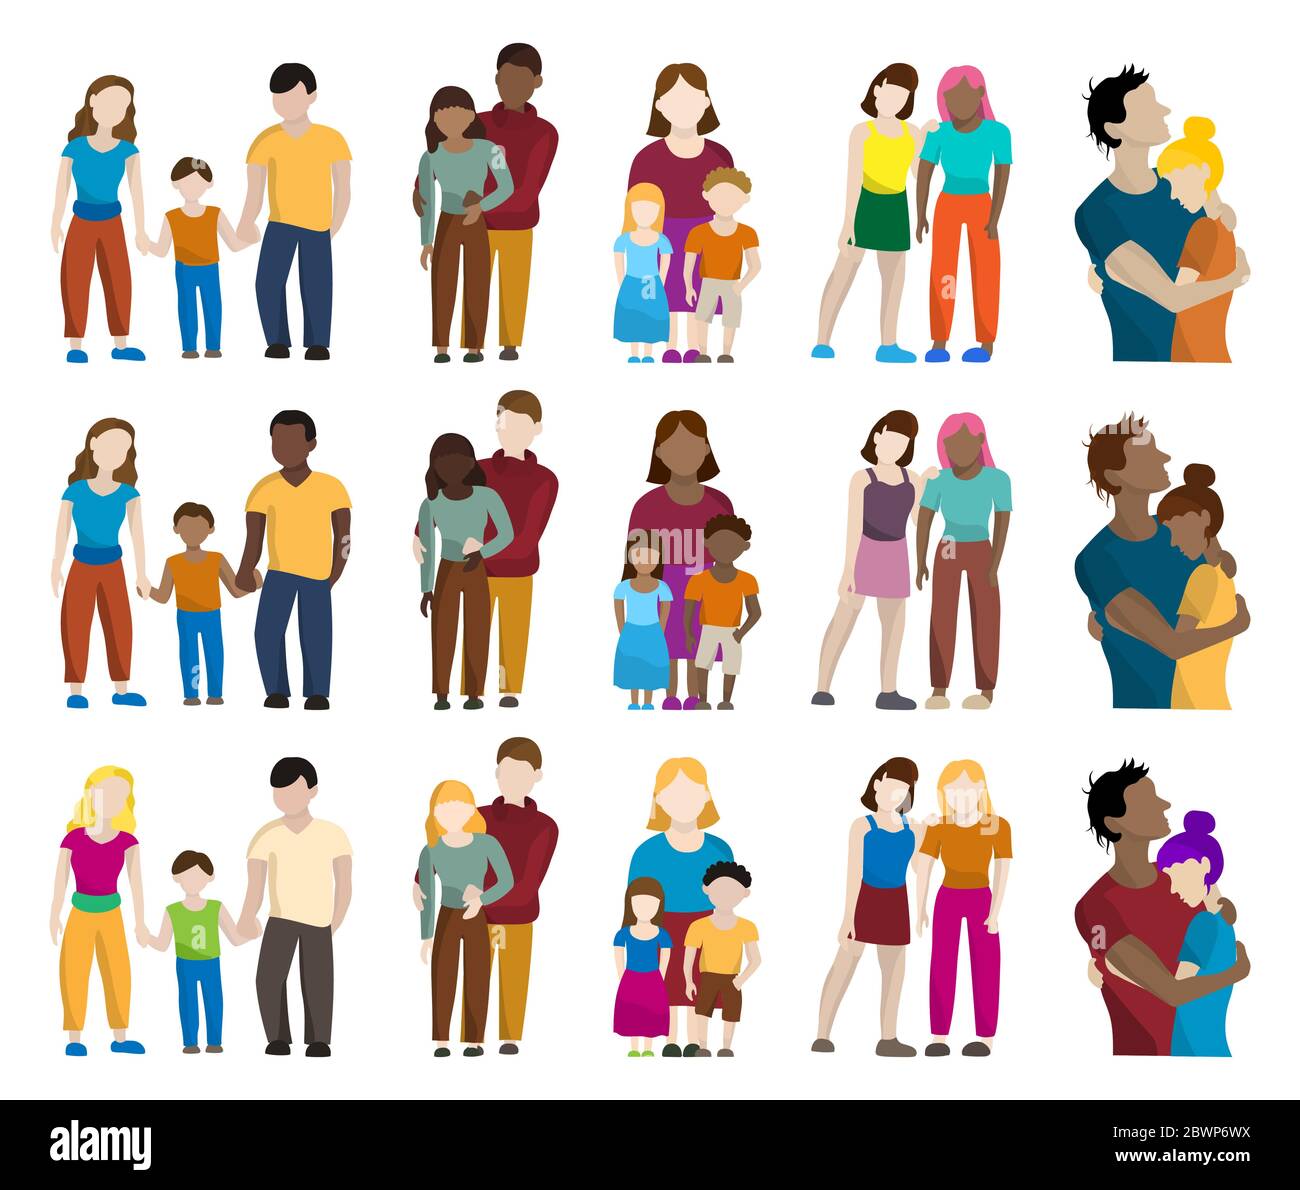 Set von farbigen Silhouetten von verschiedenen Menschen: Männer, Frauen, Kinder, Familien Stock Vektor